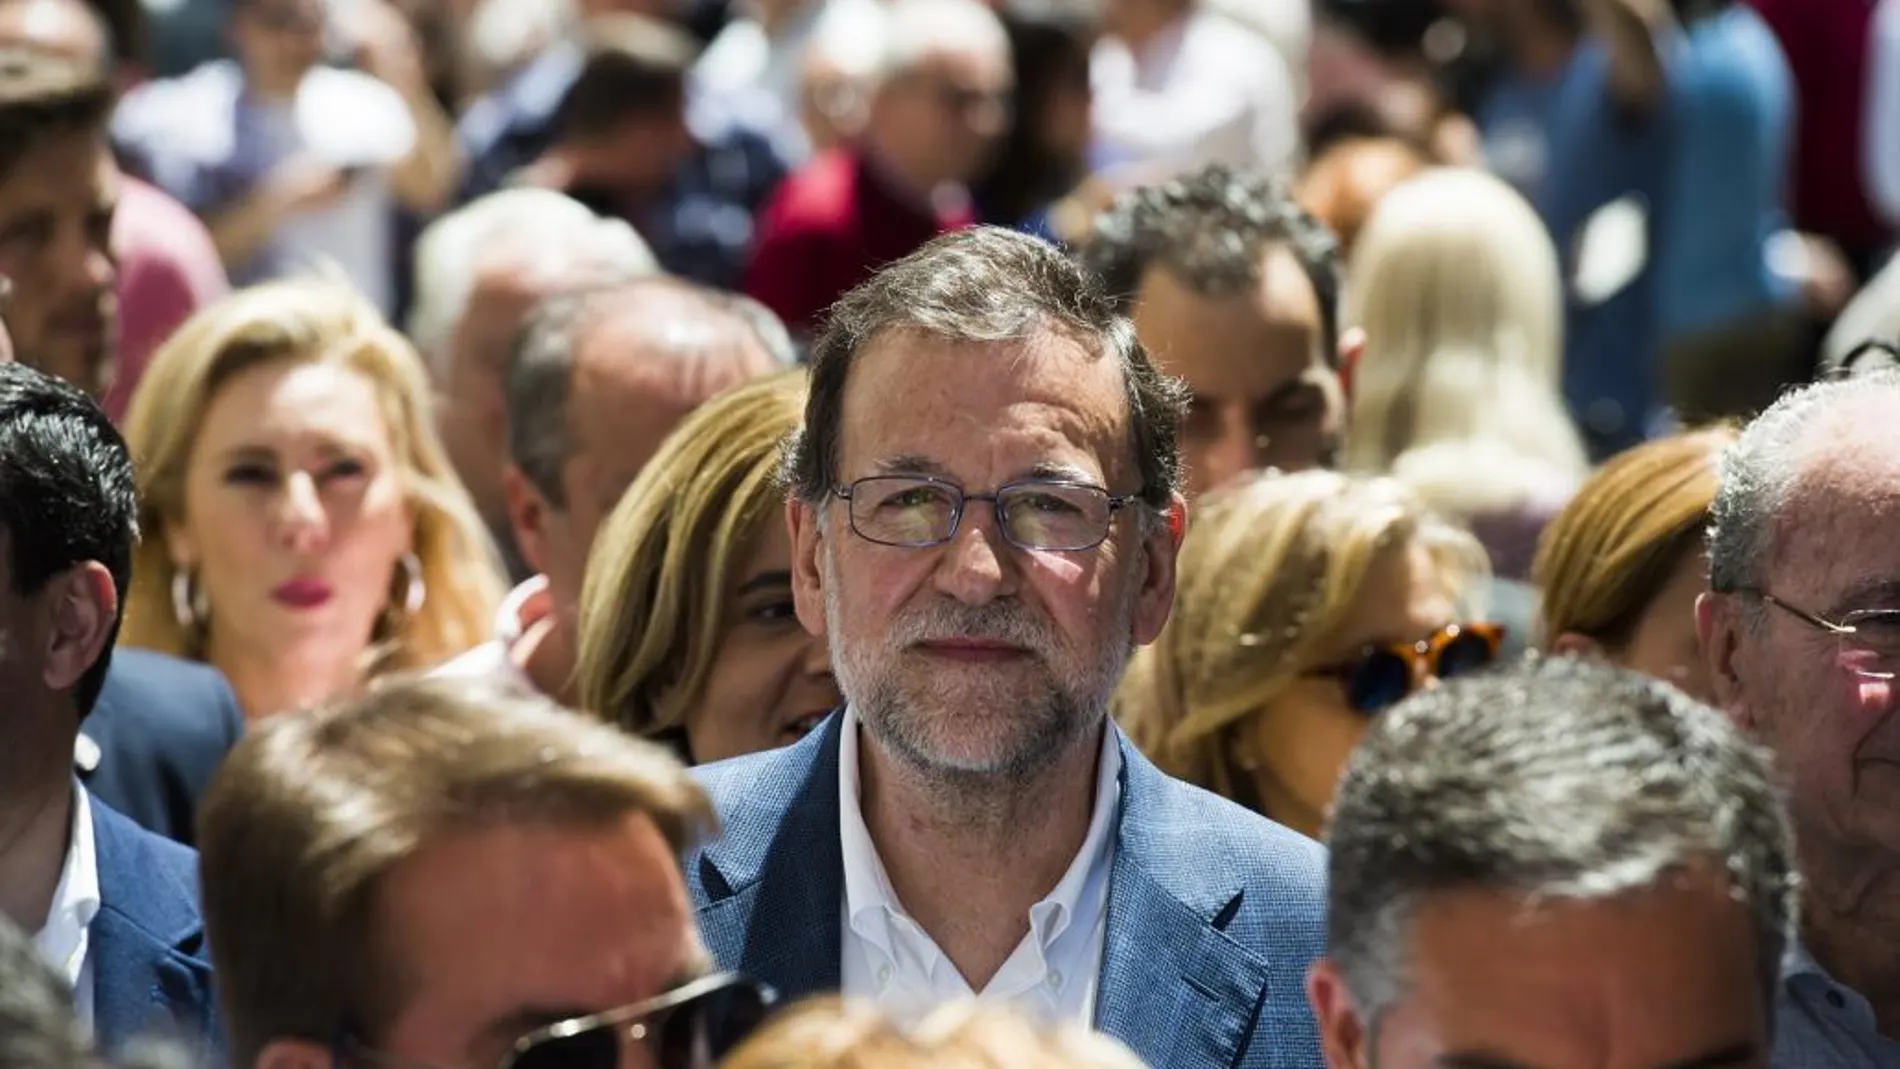 Rajoy, ayer en Málaga visitó las instalaciones de la Empresa Andaluza de Distribución y Alimentación Román y Martos, acompañado de la ministra de Empleo en funciones, Fátima Báñez, y del presidente del PP andaluz, Juan Manuel Moreno